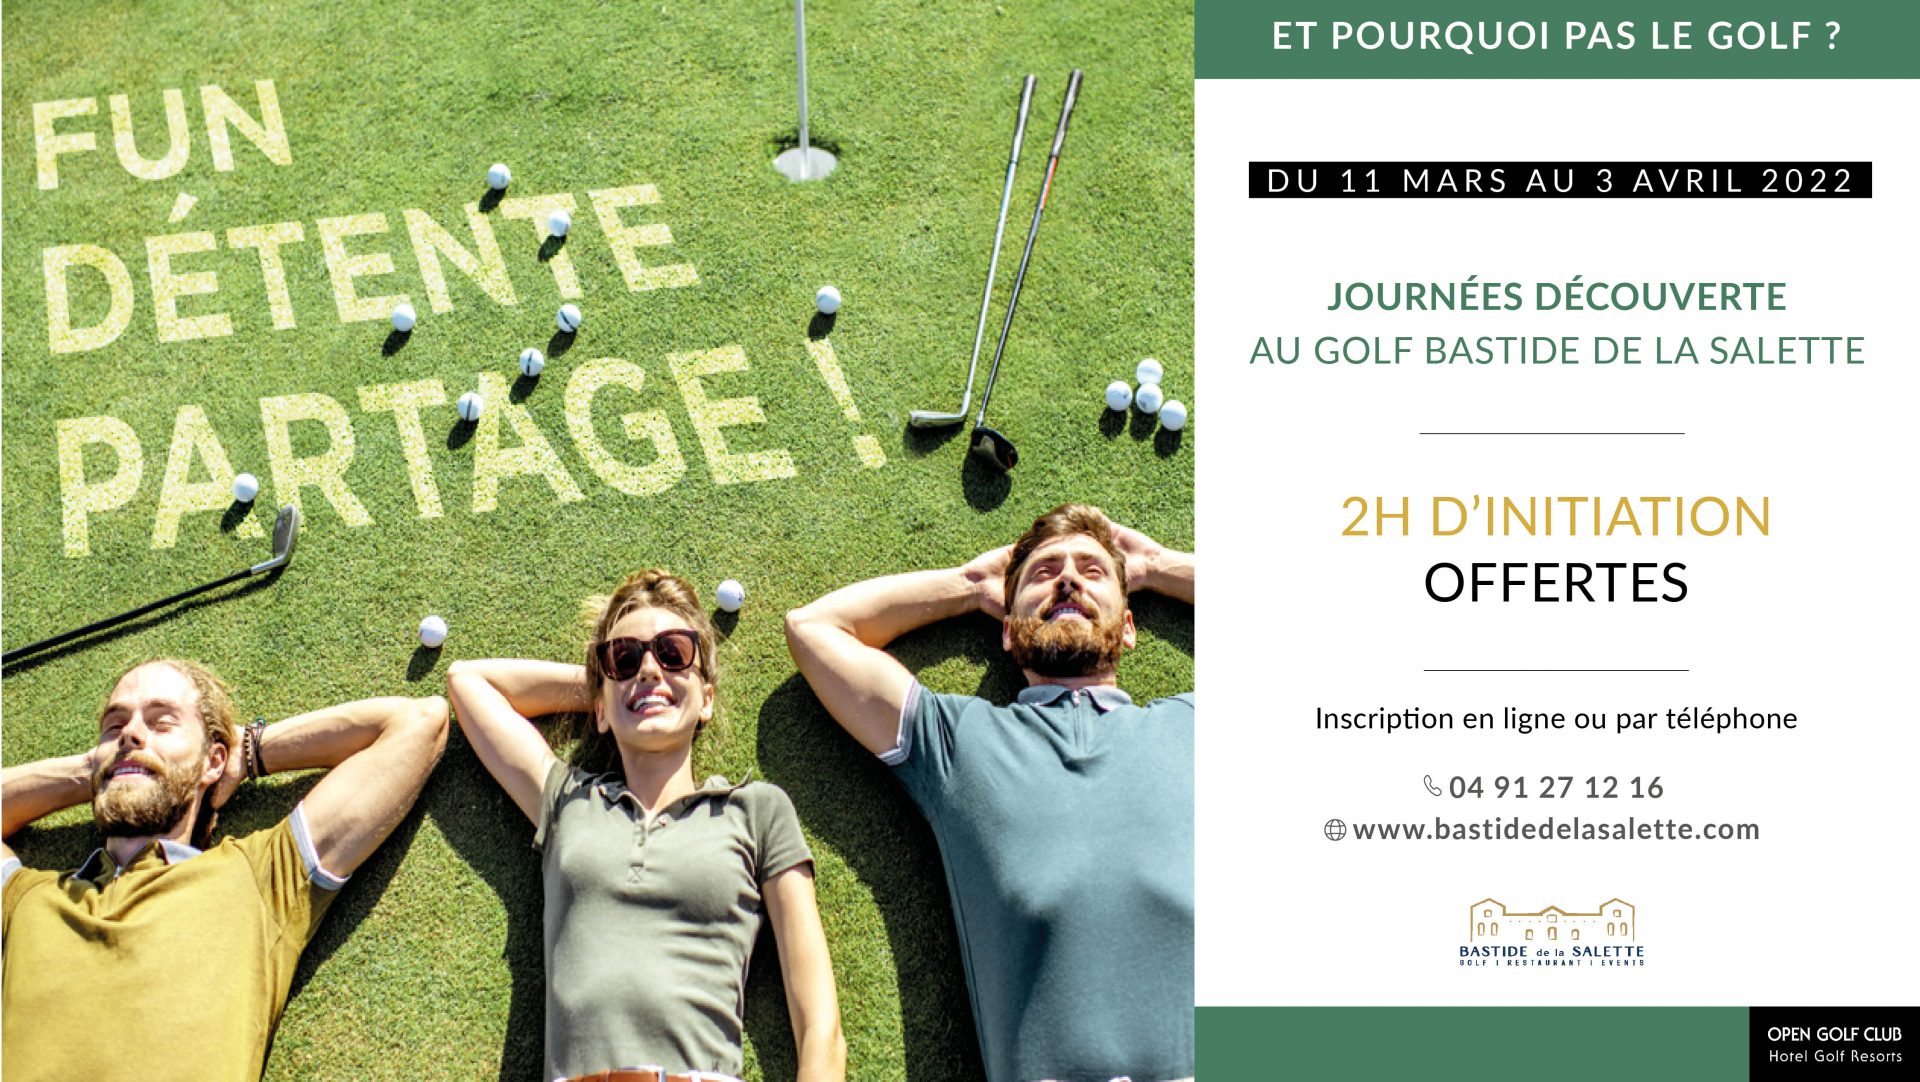 Journée découverte Golf Bastide de la Salette - tester le golf gratuitement